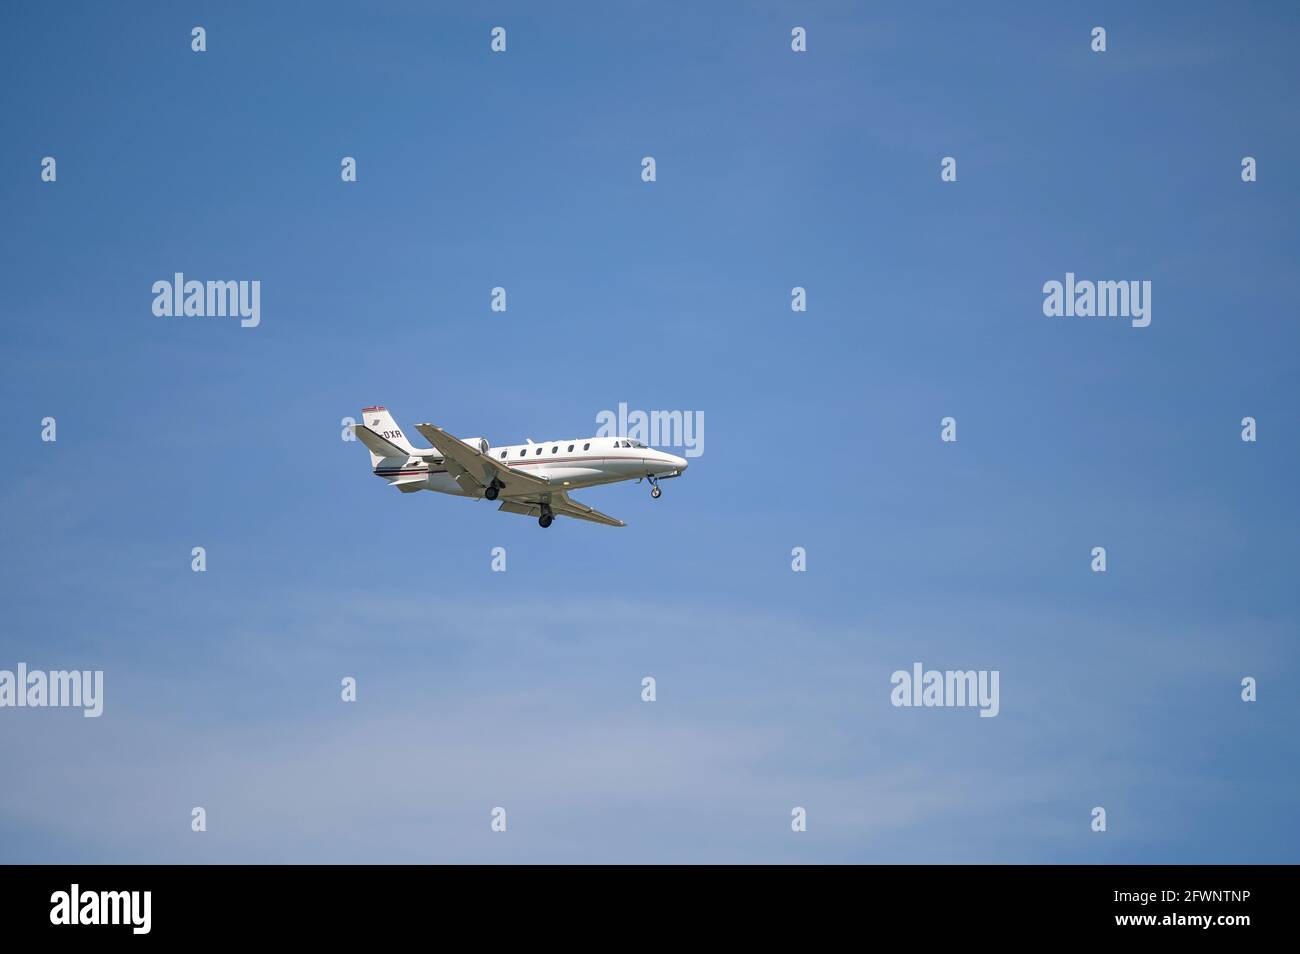 Monaco, Germania - 09. Maggio 2021 : NetJets Europe Cessna 560XLS Citation eccellono con la registrazione dell'aeromobile CS-DXR nell'avvicinamento alla corsa nord Foto Stock